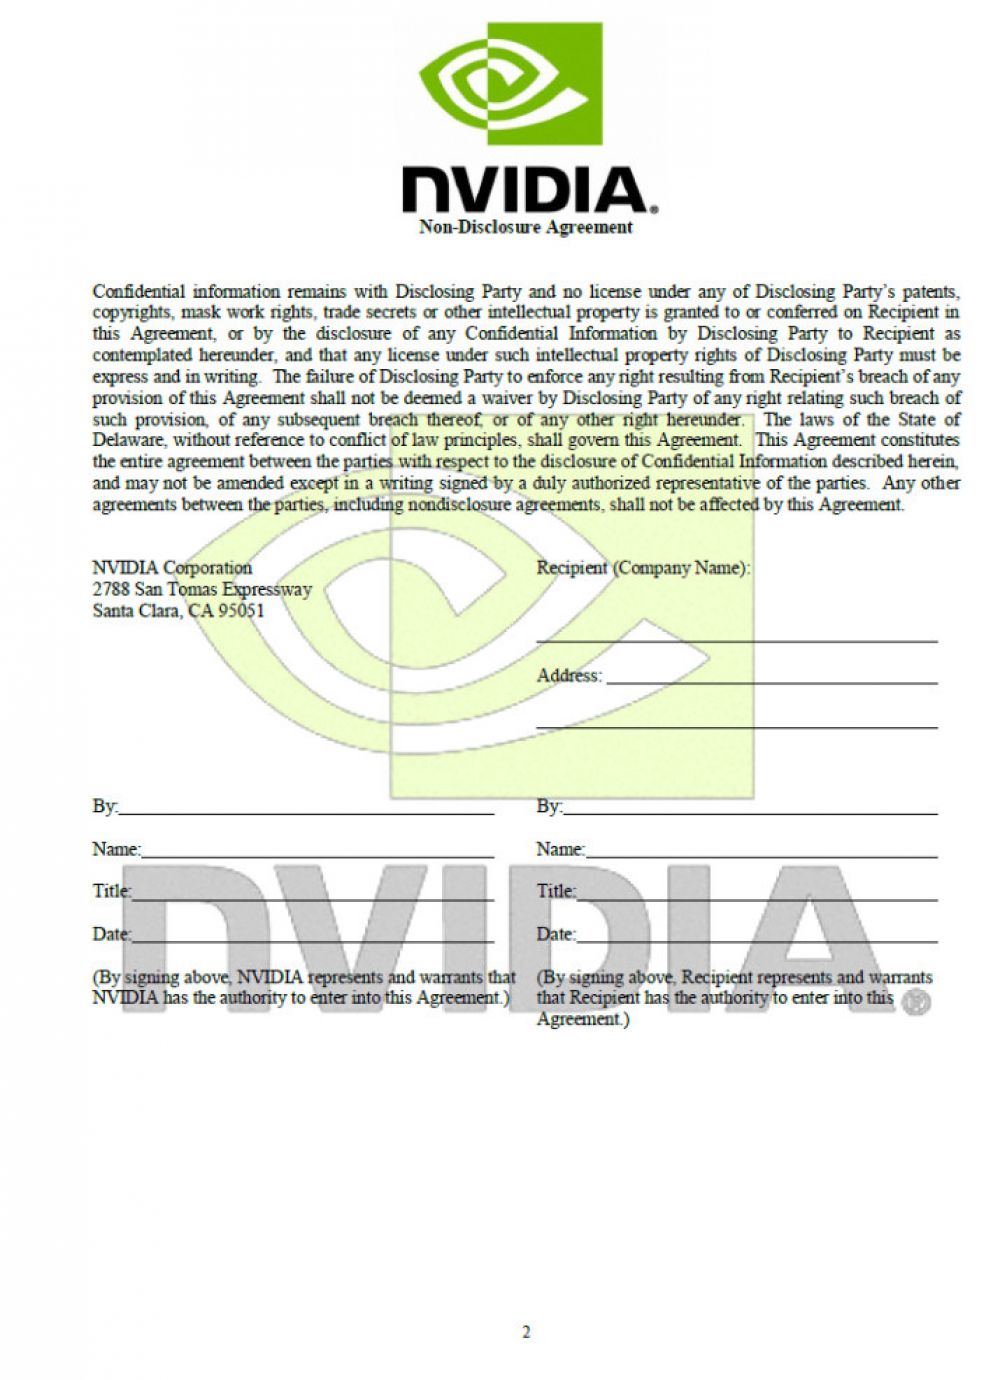 Nvidia наносит серьезный удар по свободе СМИ